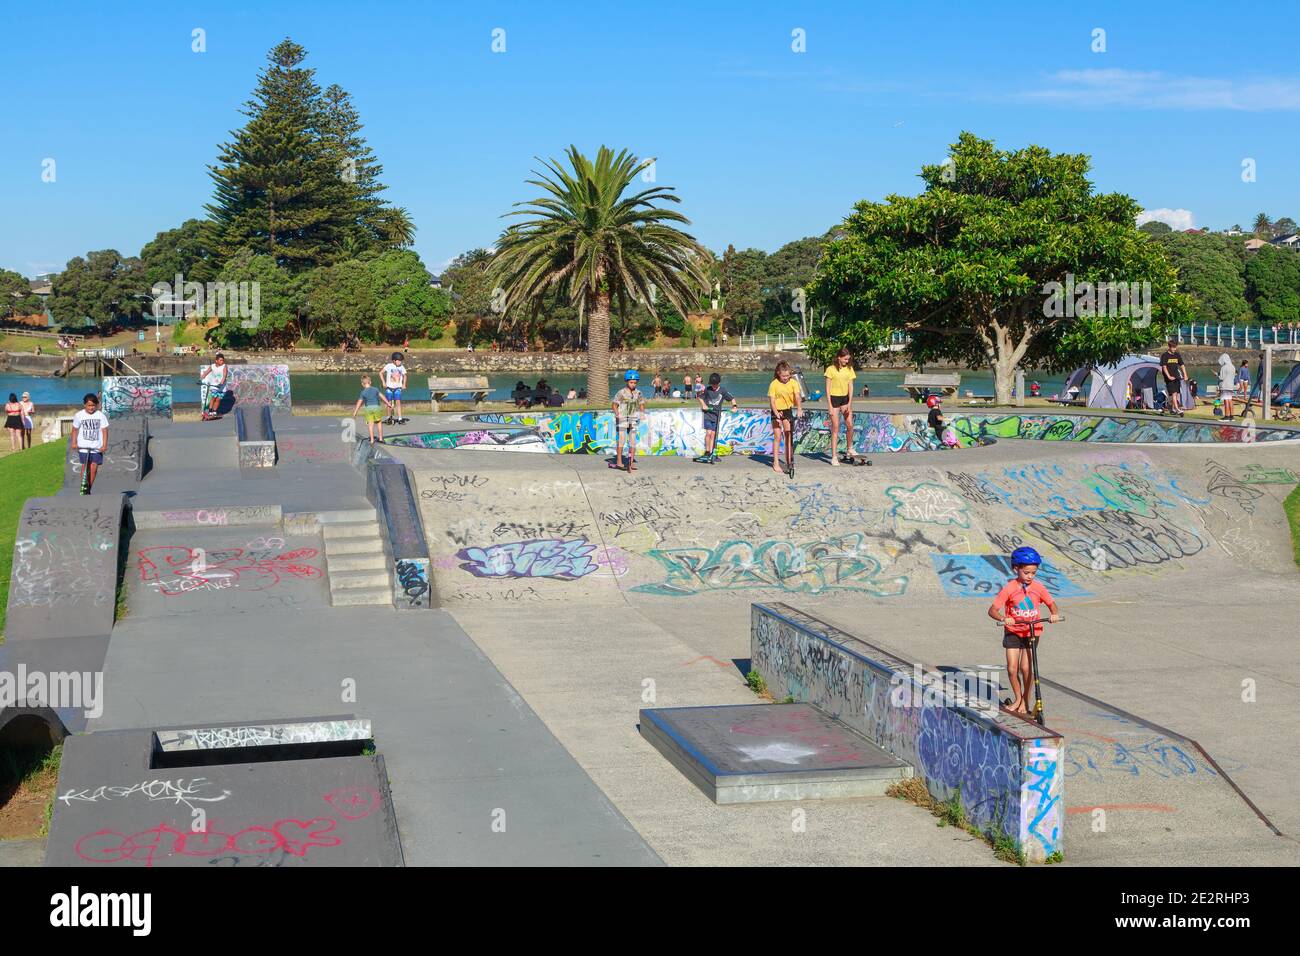 Kinder auf Rollern und Skateboards spielen in einem Skatepark. Raglan, Neuseeland Stockfoto